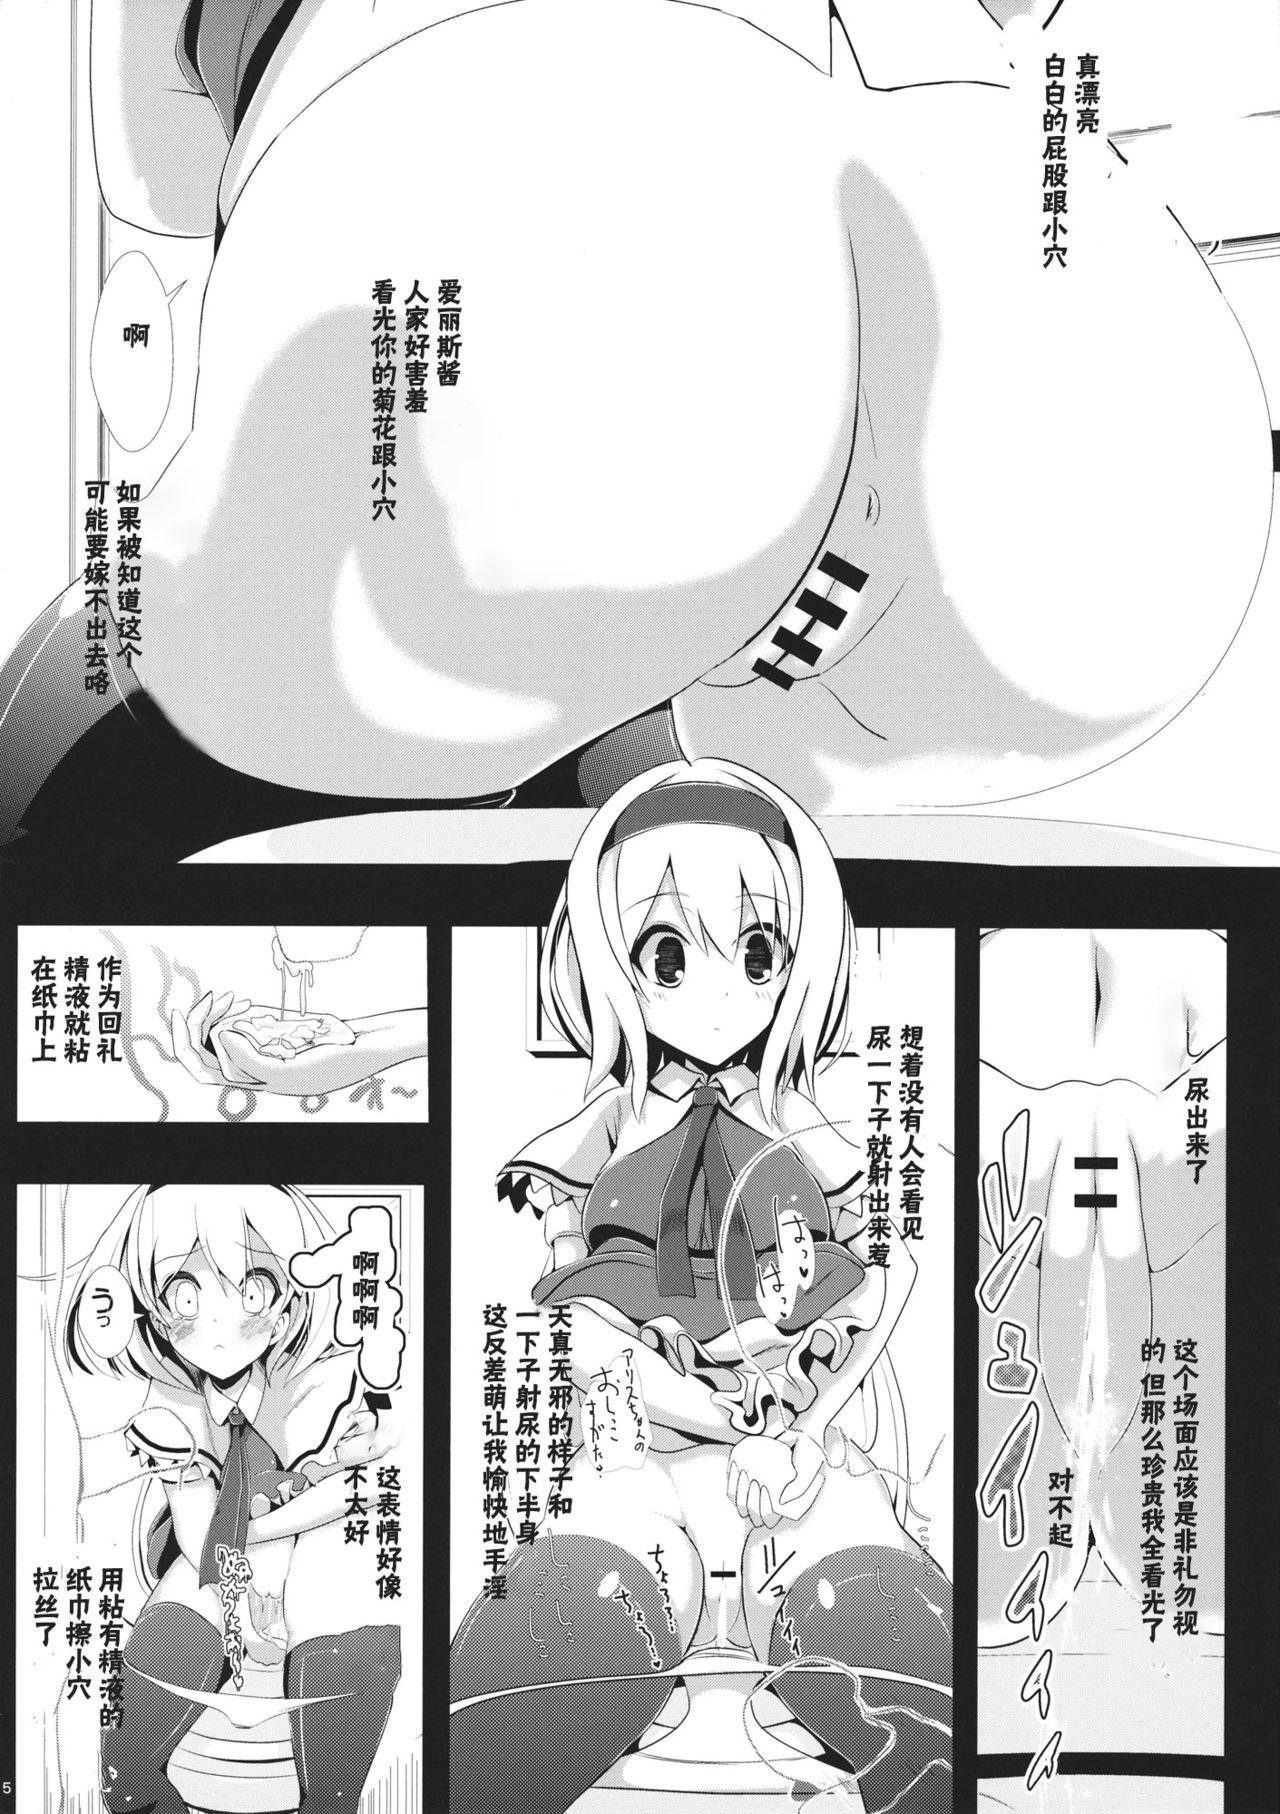 Belly Touhou Toumei Ningen 1 Shinnyuu Alice n Chi - Touhou project Suckingdick - Page 6